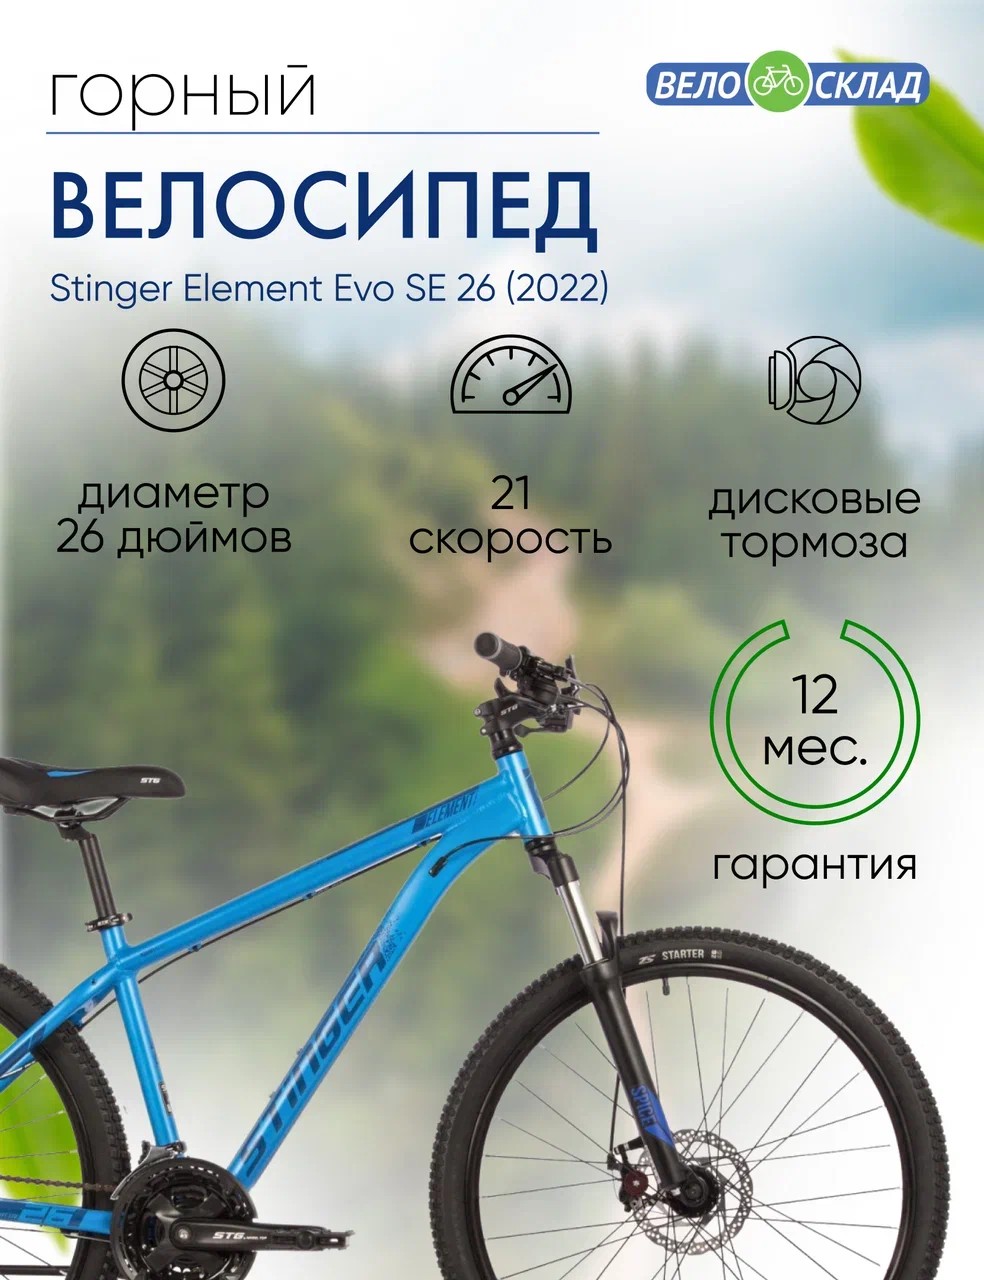 Горный велосипед Stinger Element Evo SE 26, год 2022, цвет Синий, ростовка 18